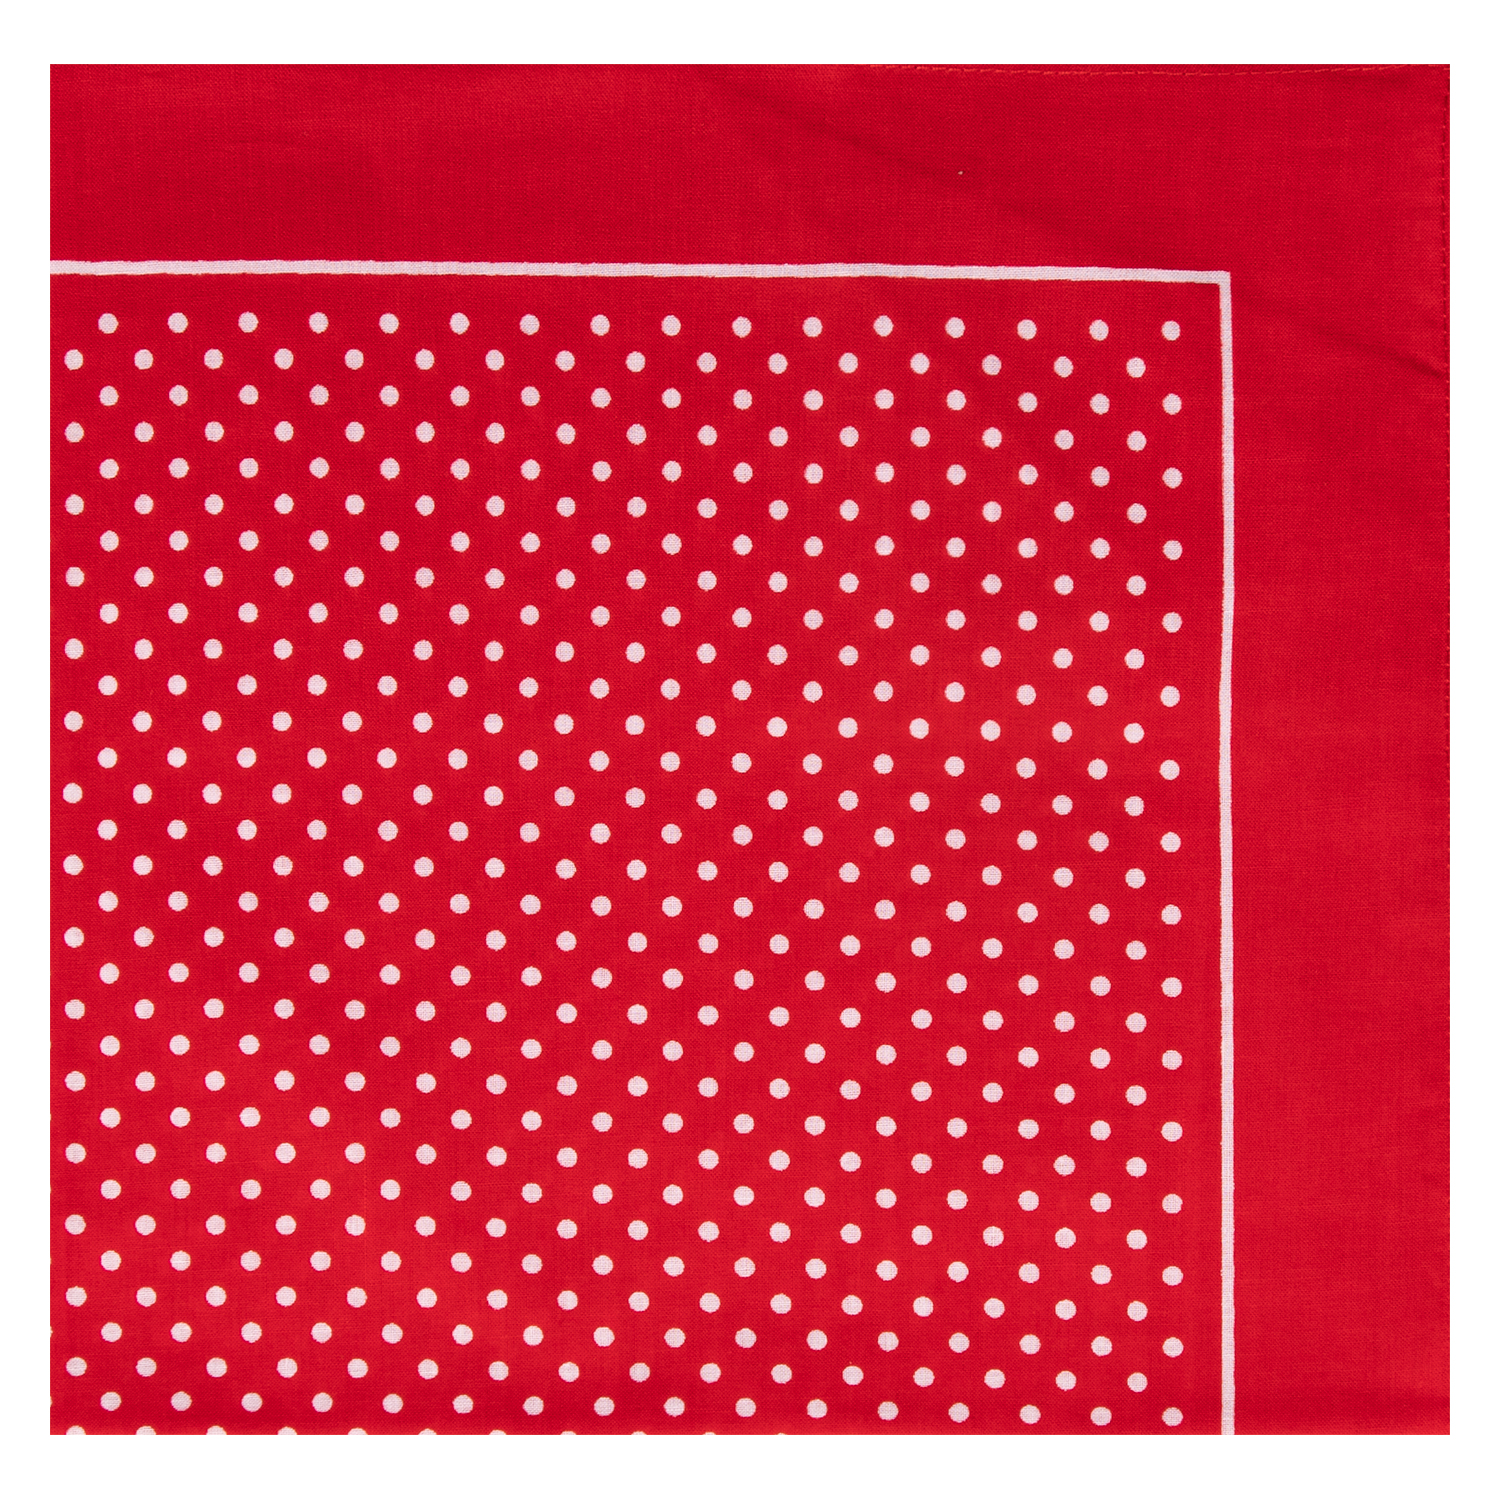 Nickytuch mit Punkten - Farbe rot